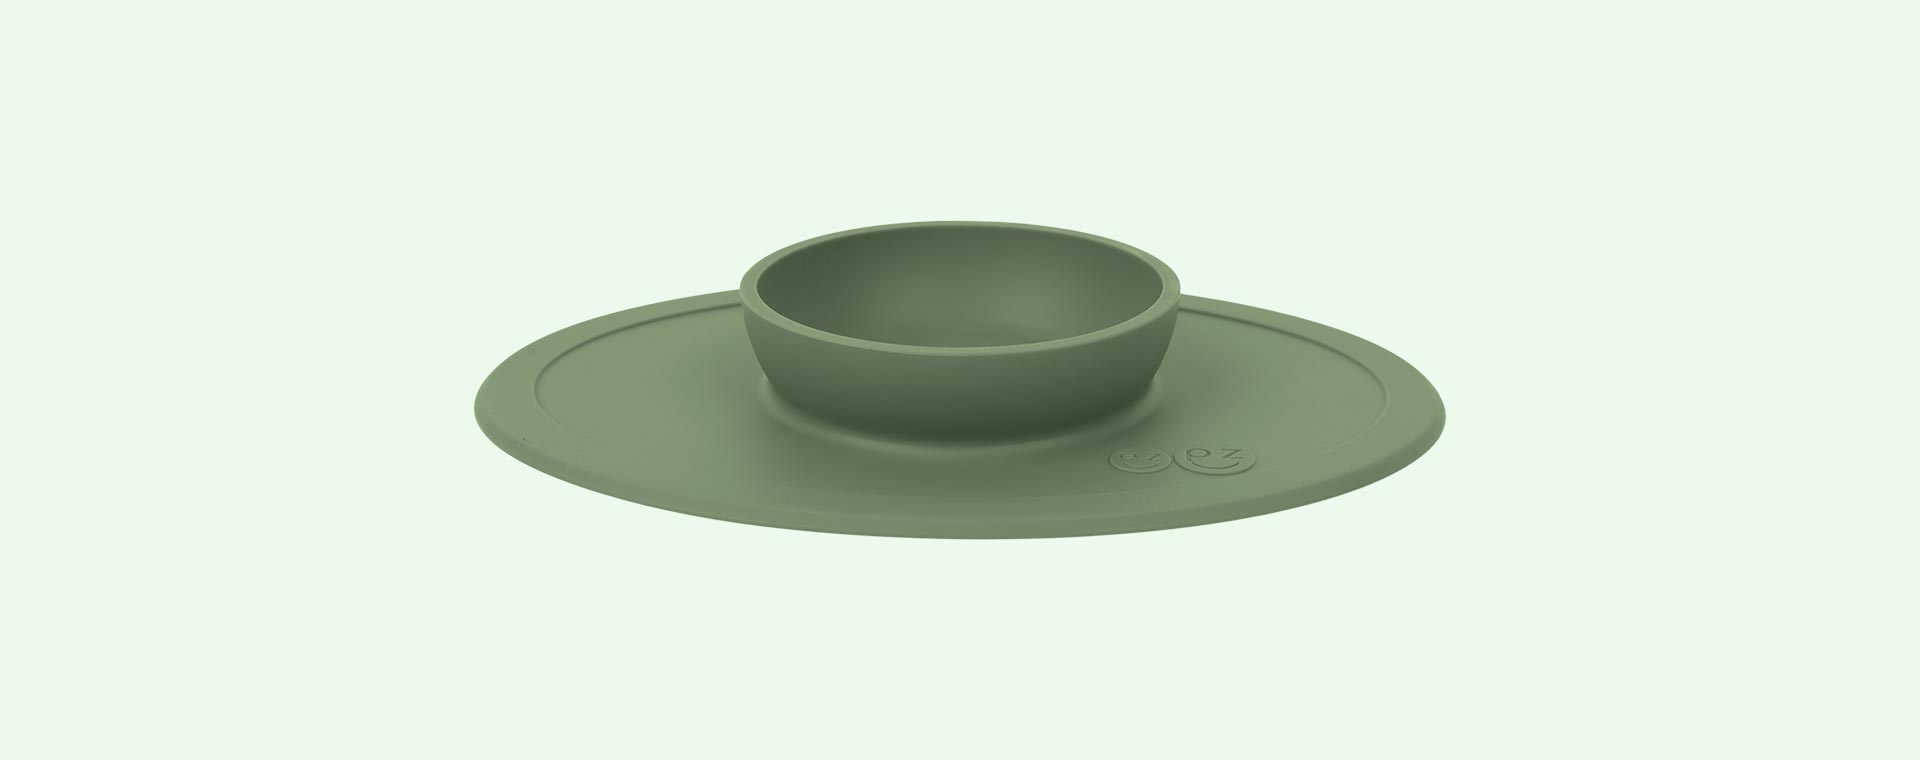 Olive ezpz Tiny Bowl